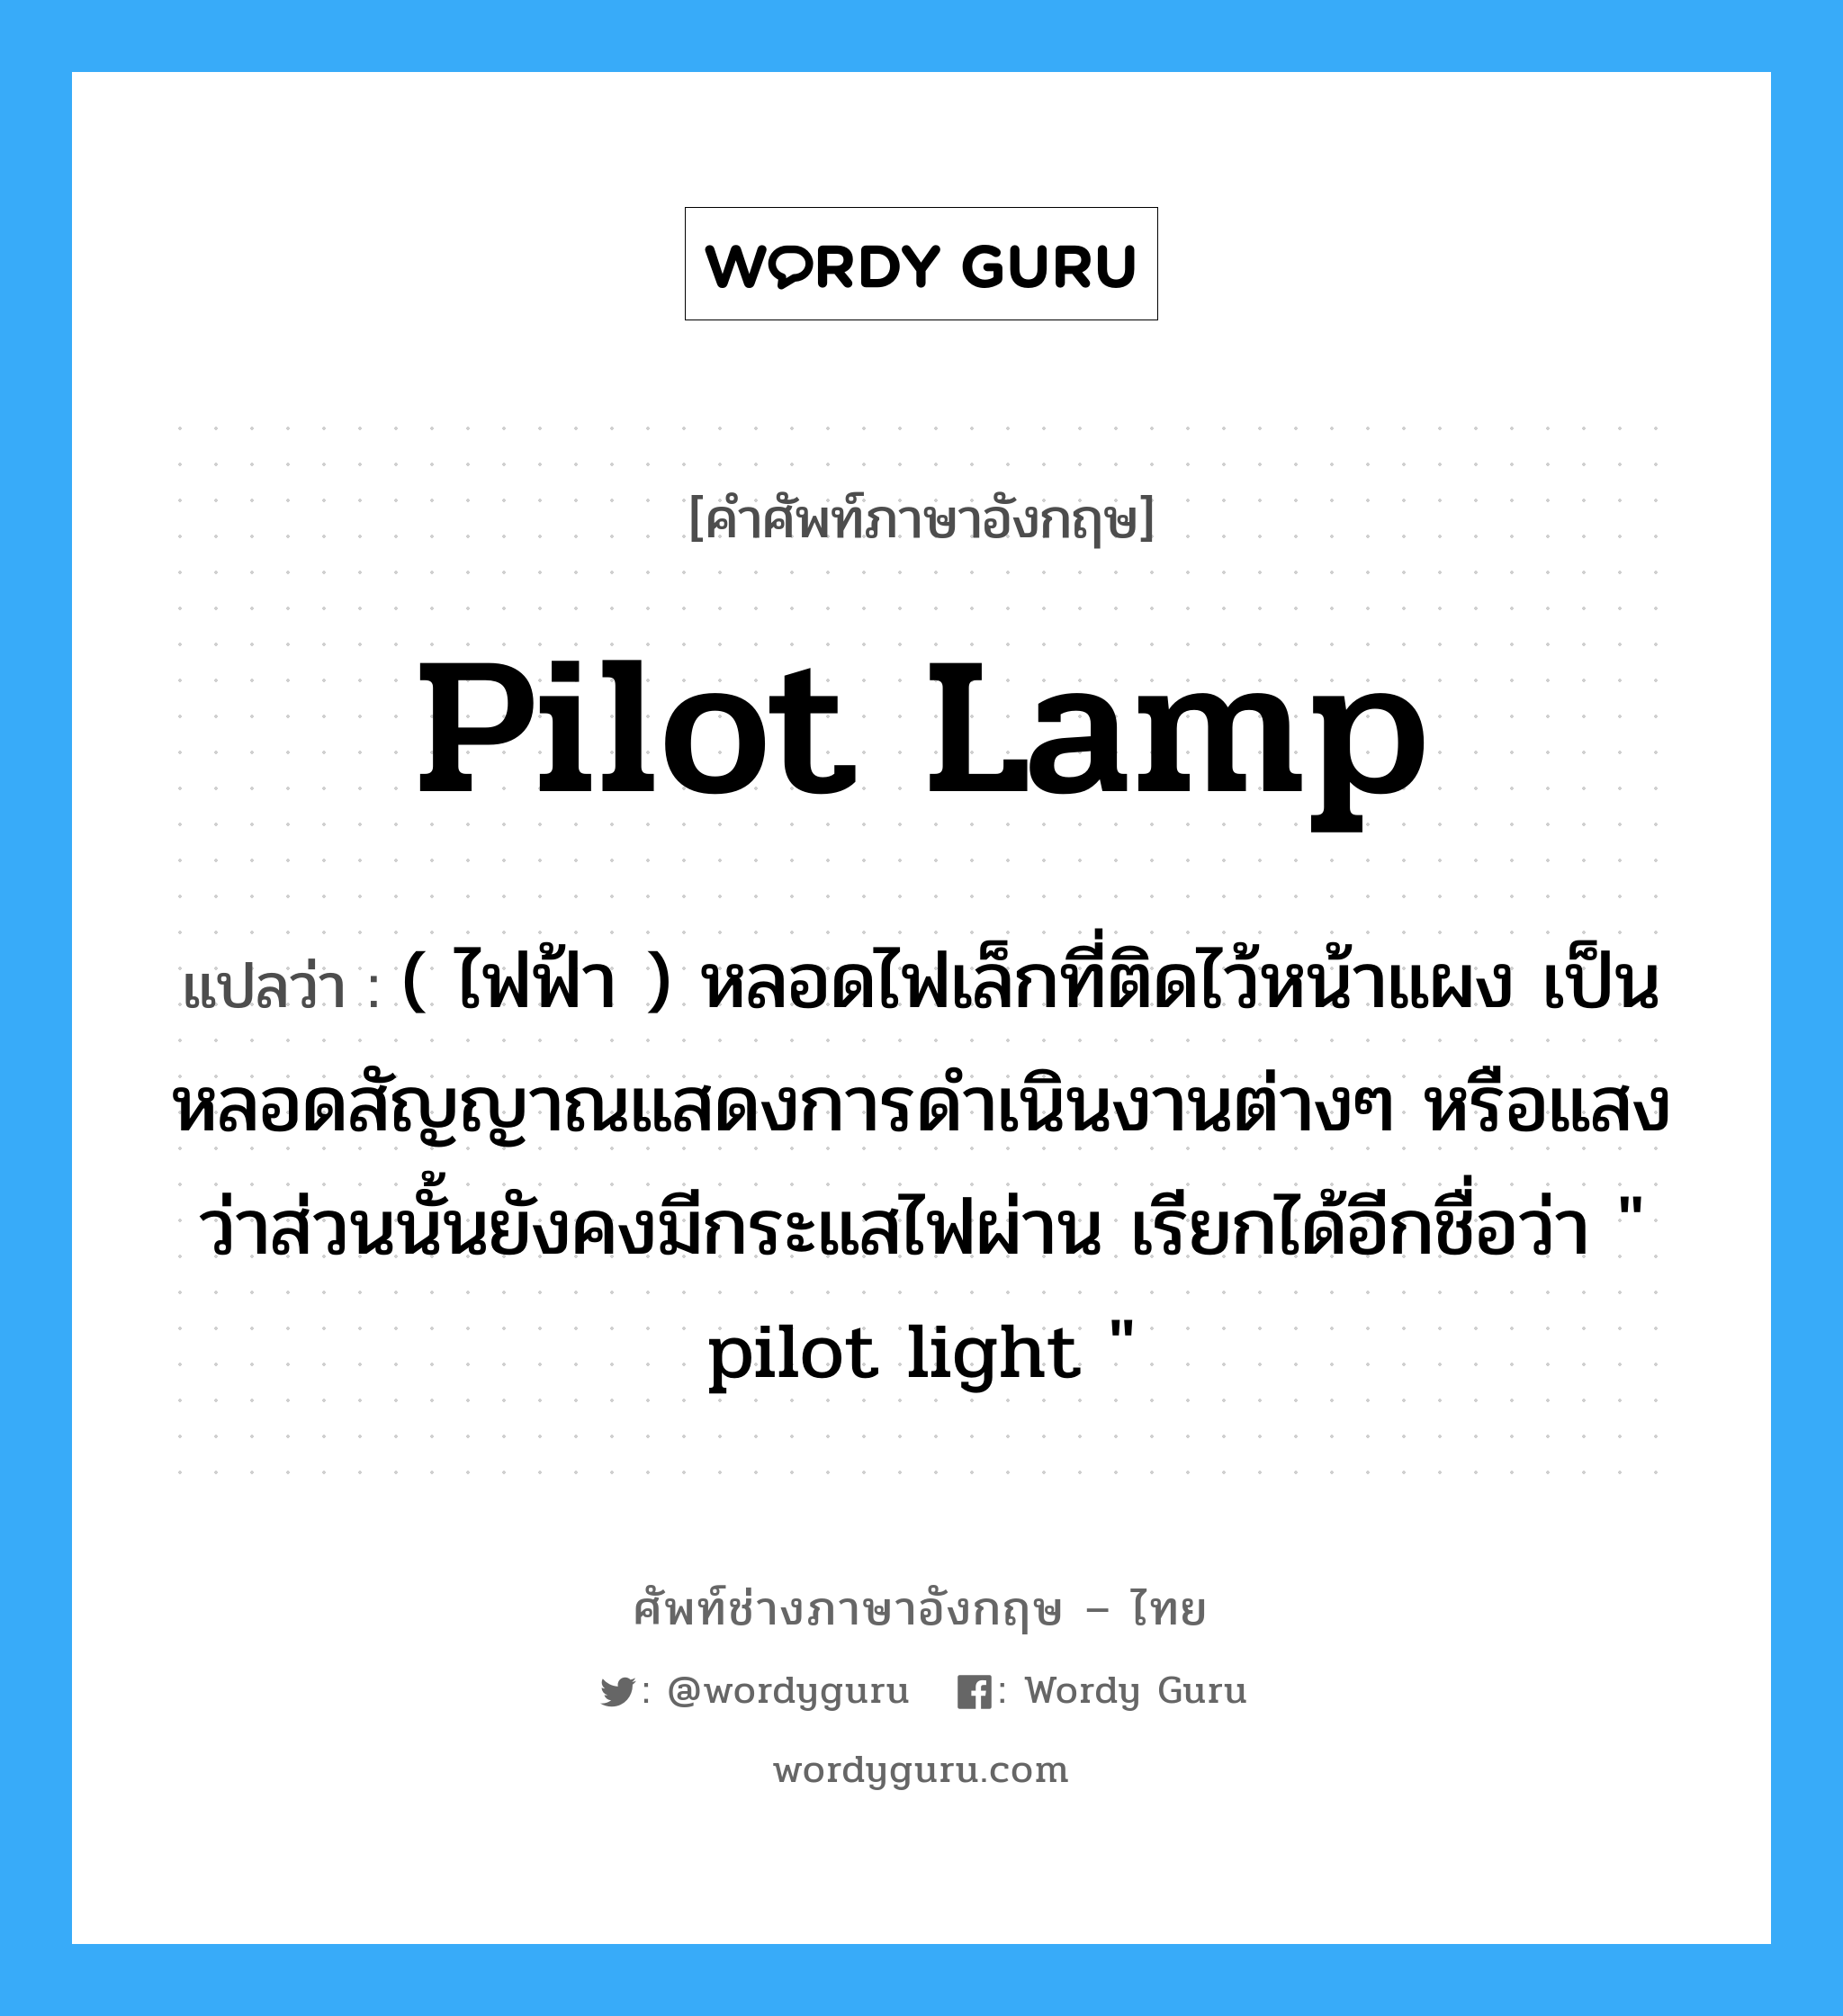 pilot-lamp แปลว่า?, คำศัพท์ช่างภาษาอังกฤษ - ไทย pilot lamp คำศัพท์ภาษาอังกฤษ pilot lamp แปลว่า ( ไฟฟ้า ) หลอดไฟเล็กที่ติดไว้หน้าแผง เป็นหลอดสัญญาณแสดงการดำเนินงานต่างๆ หรือแสงว่าส่วนนั้นยังคงมีกระแสไฟผ่าน เรียกได้อีกชื่อว่า " pilot light "